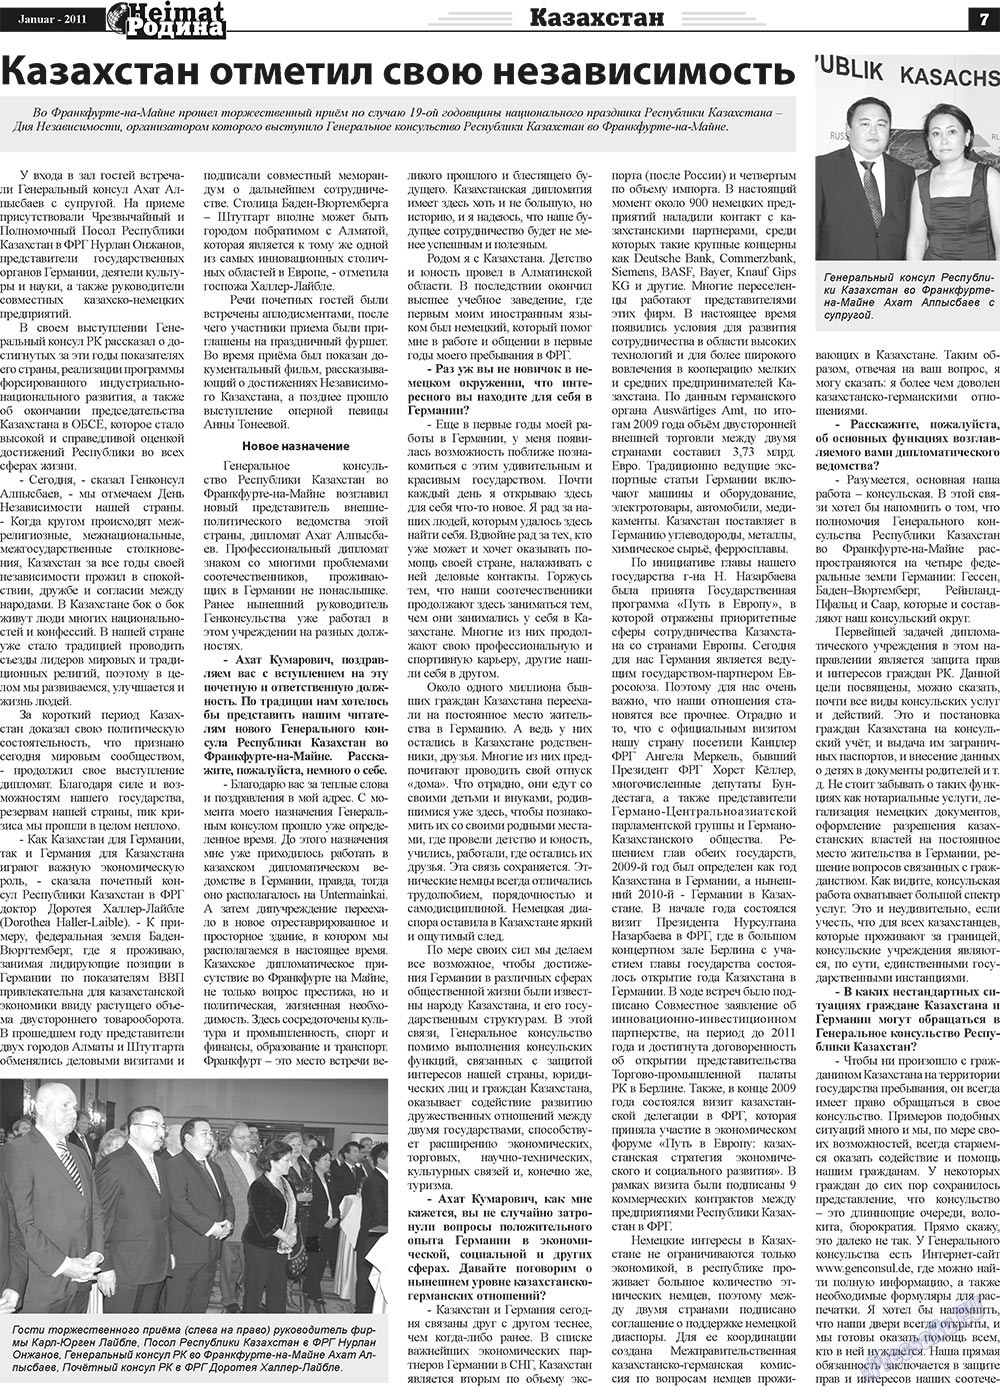 Heimat-Родина (газета). 2011 год, номер 1, стр. 7